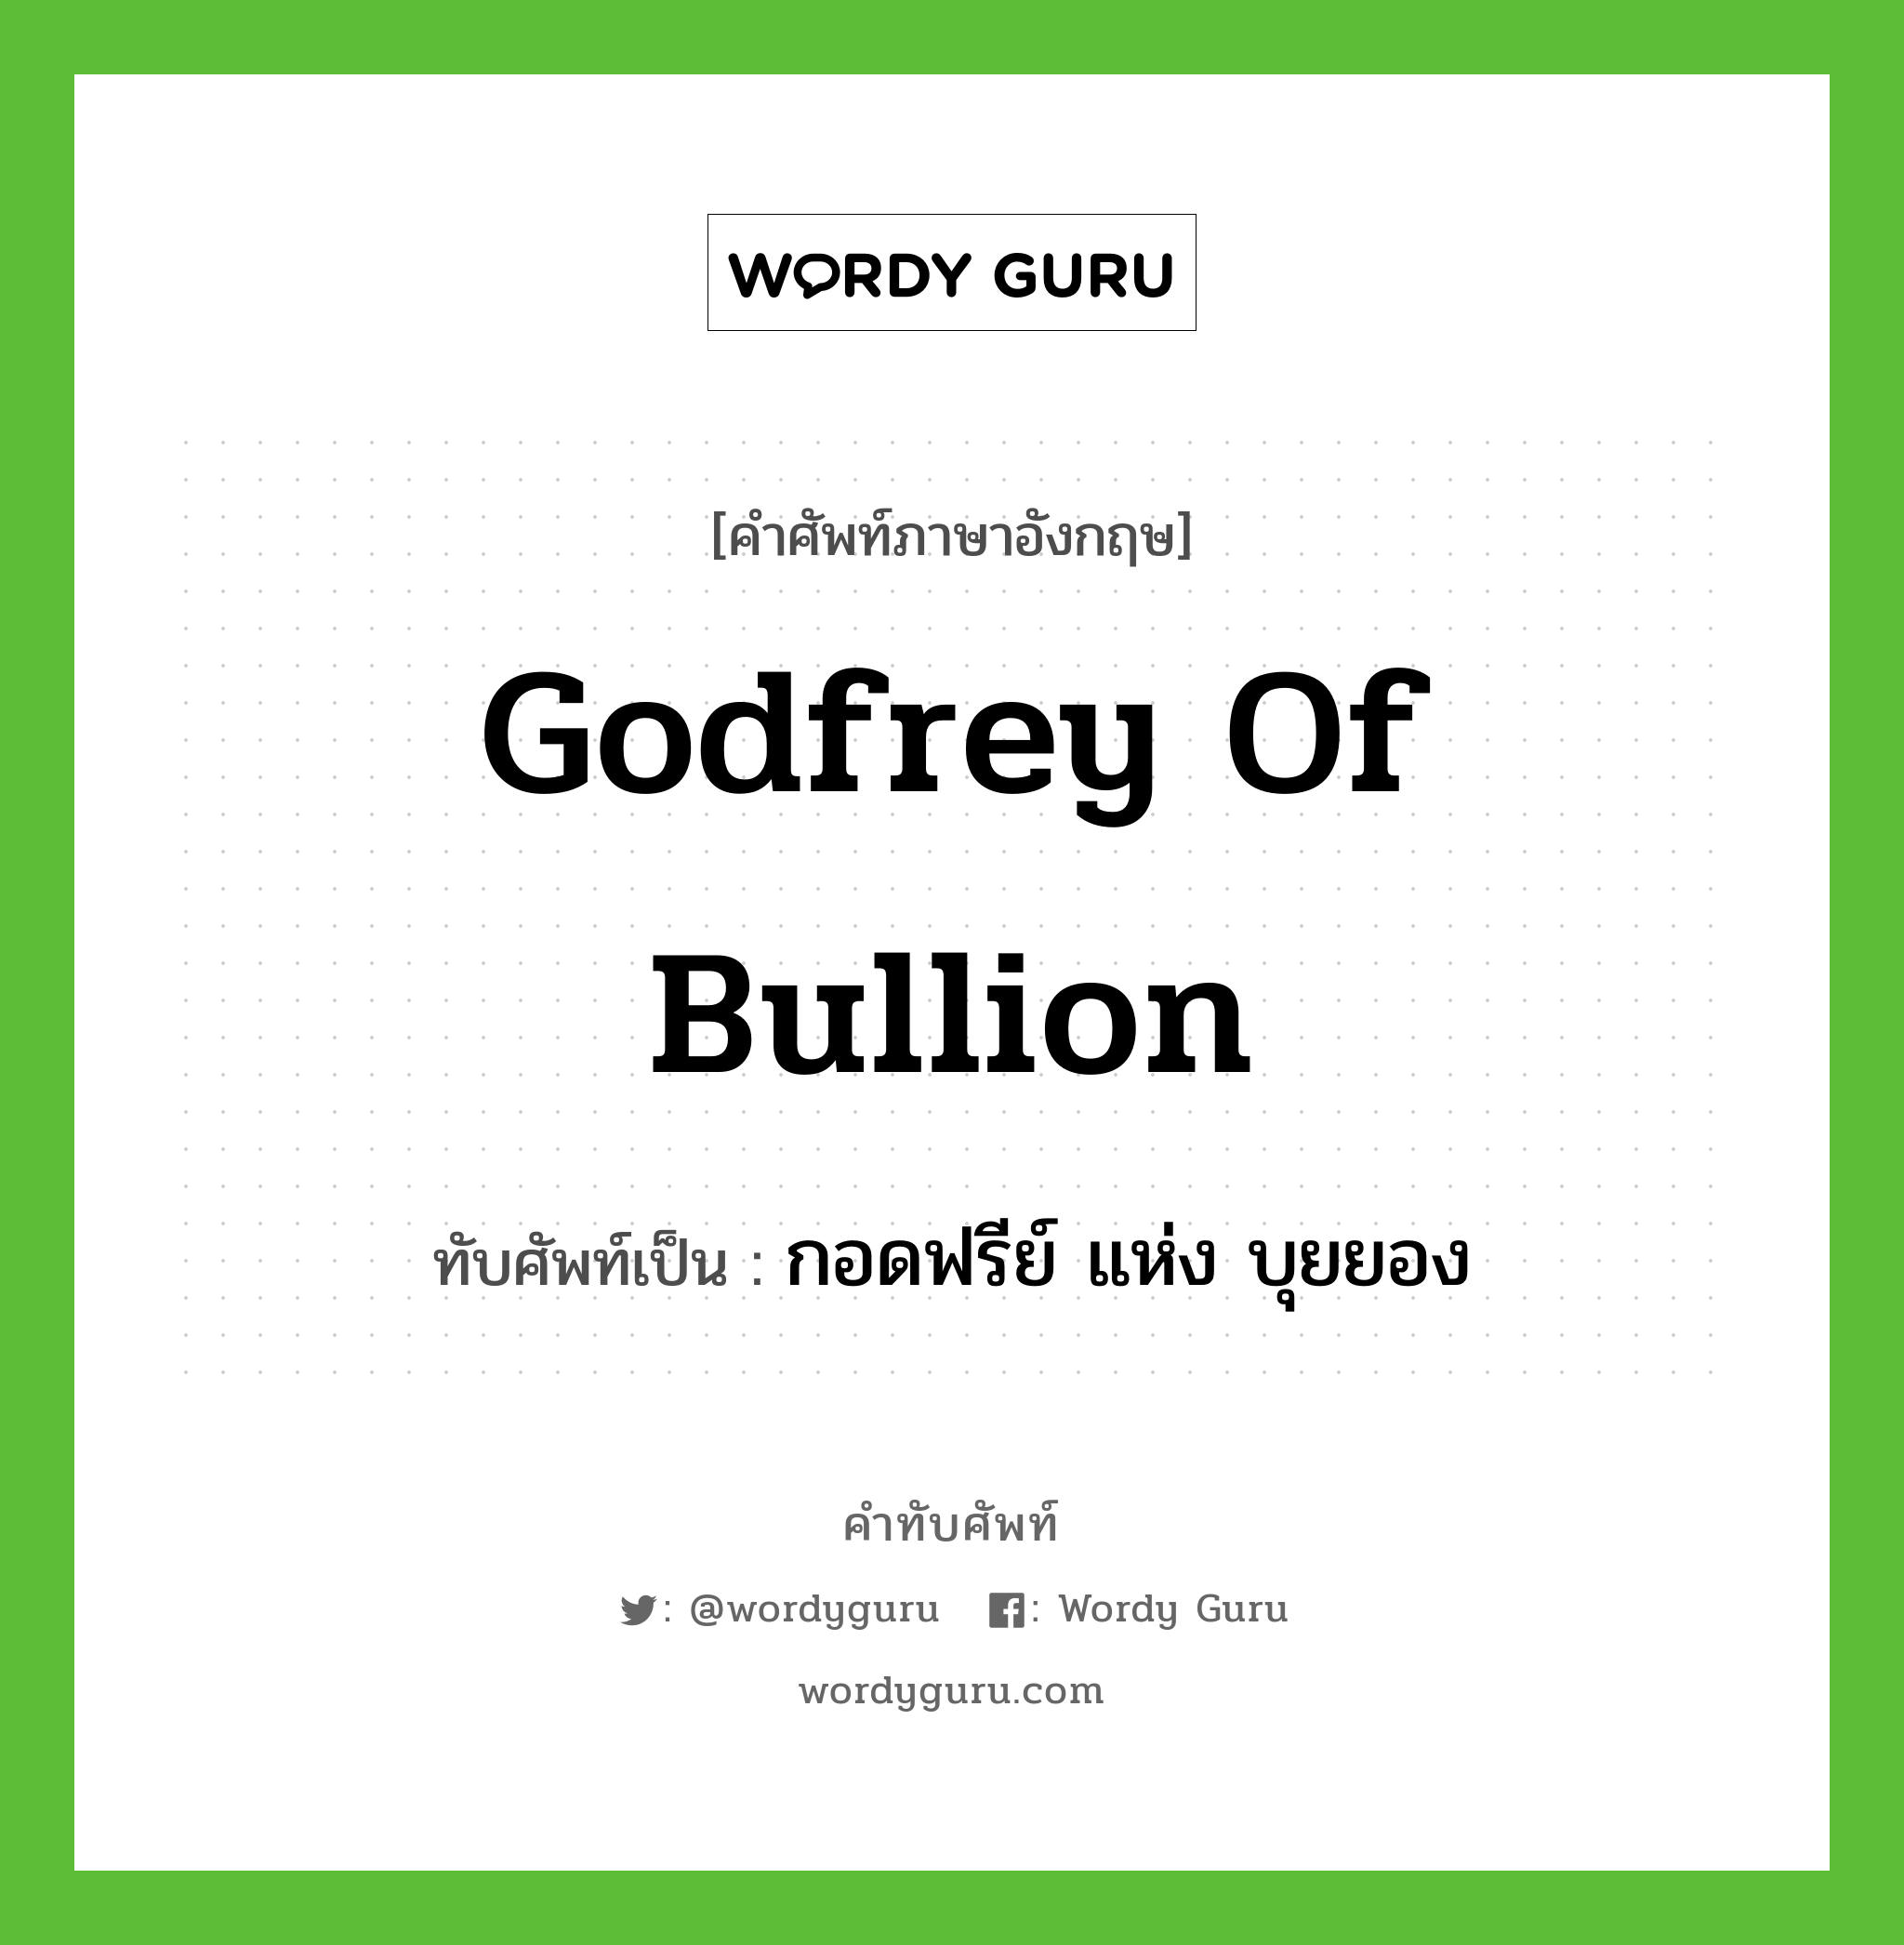 Godfrey of Bullion เขียนเป็นคำไทยว่าอะไร?, คำศัพท์ภาษาอังกฤษ Godfrey of Bullion ทับศัพท์เป็น กอดฟรีย์ แห่ง บุยยอง